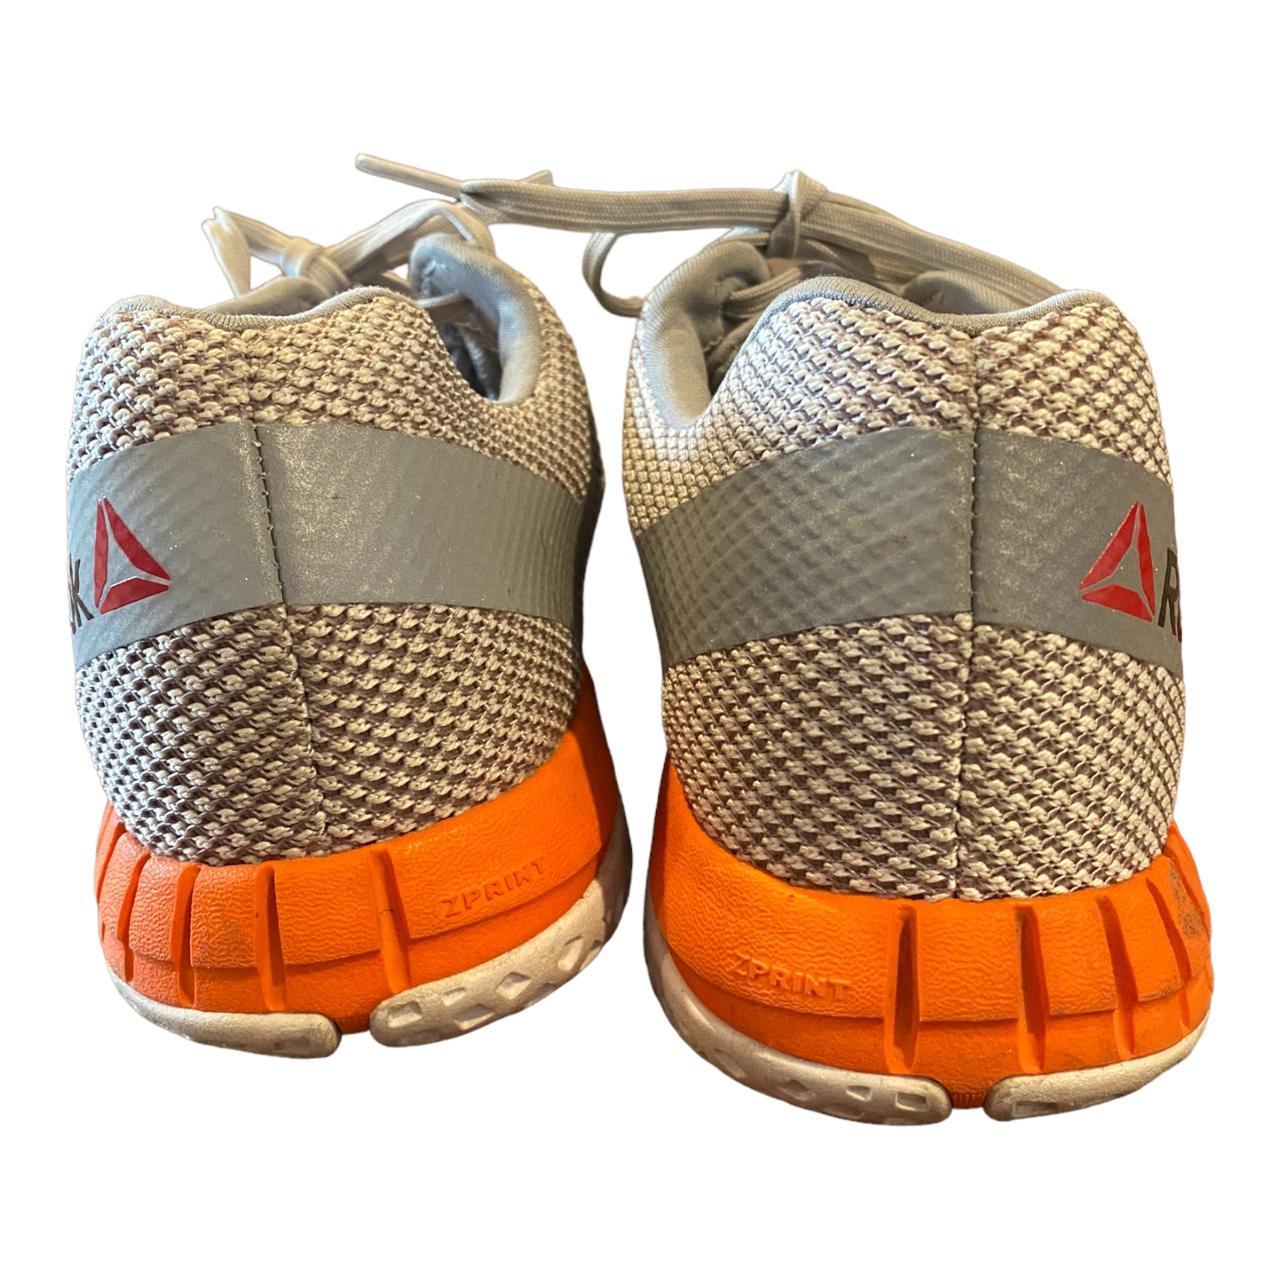 Women's Size 10 Athletic Shoes 023501 - Depop